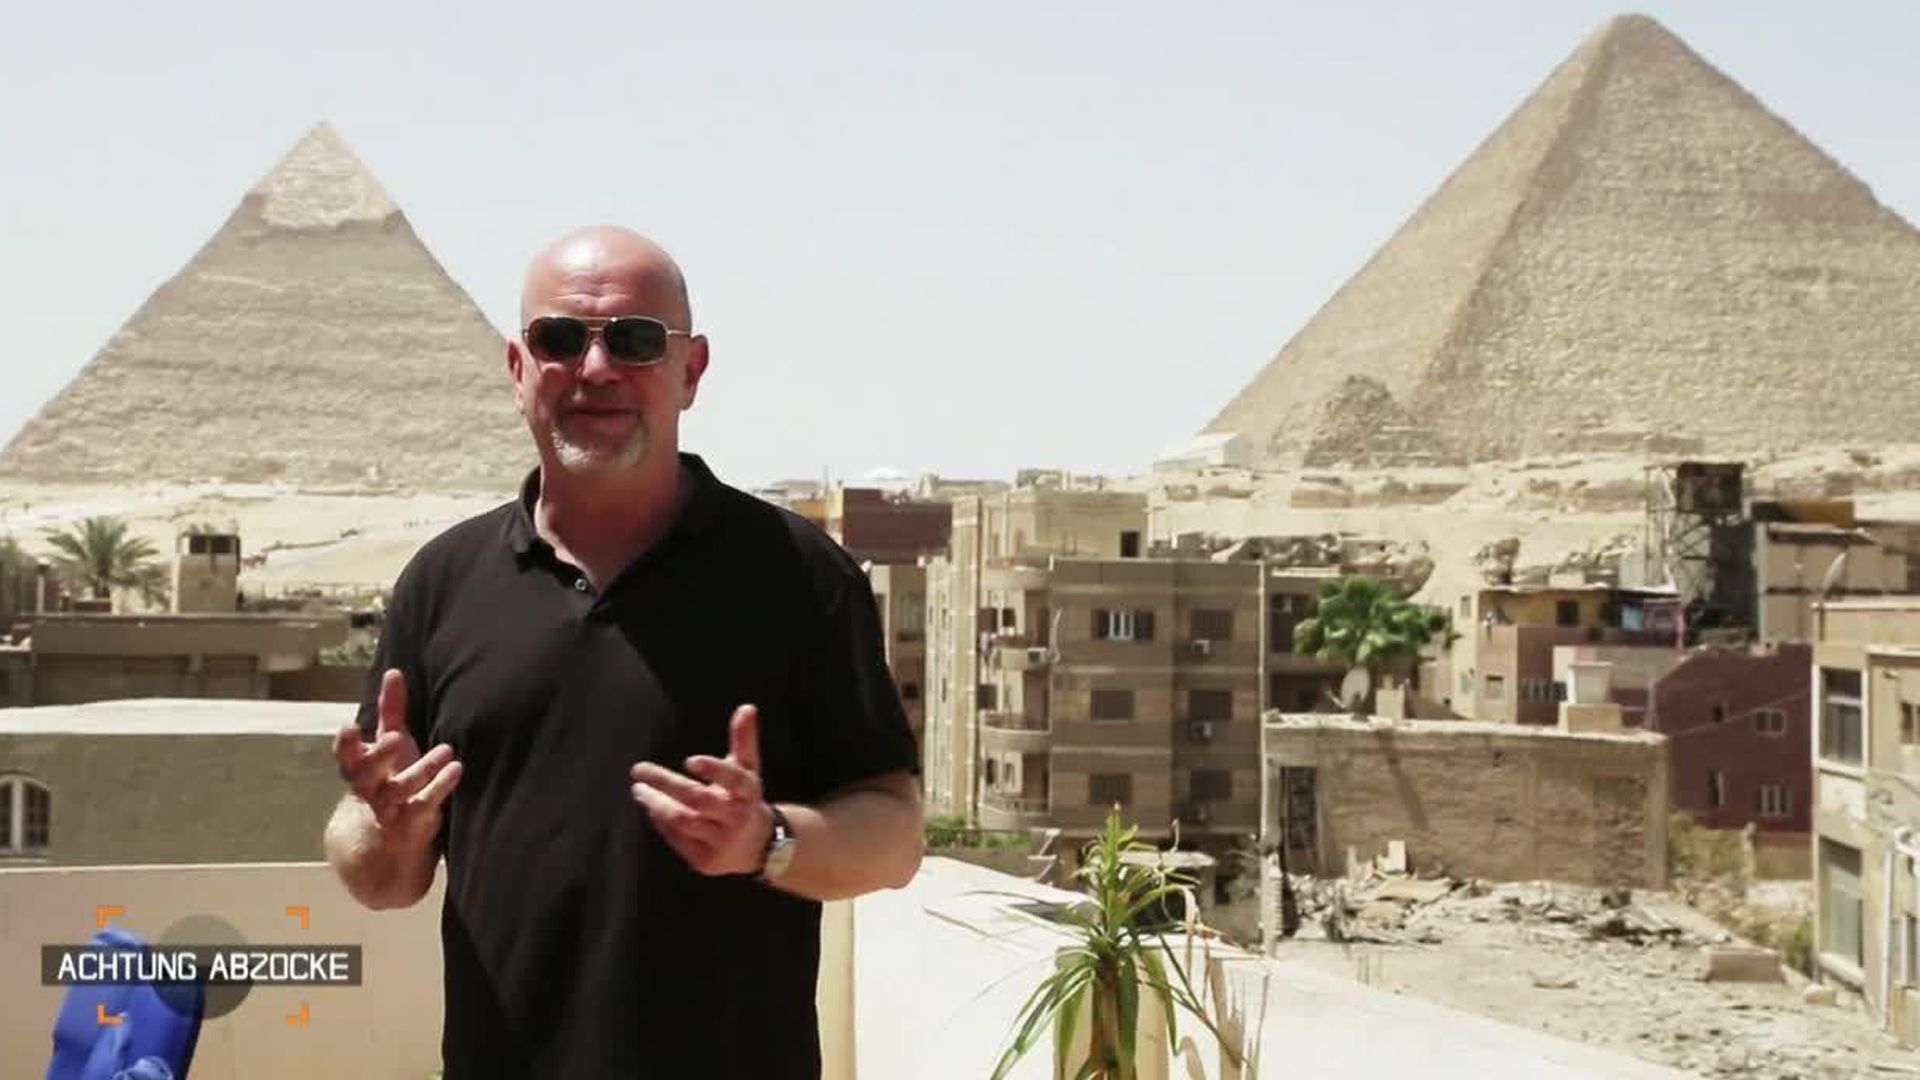 Abzocke auf ägyptisch - Peter Giesel deckt die Tricks auf